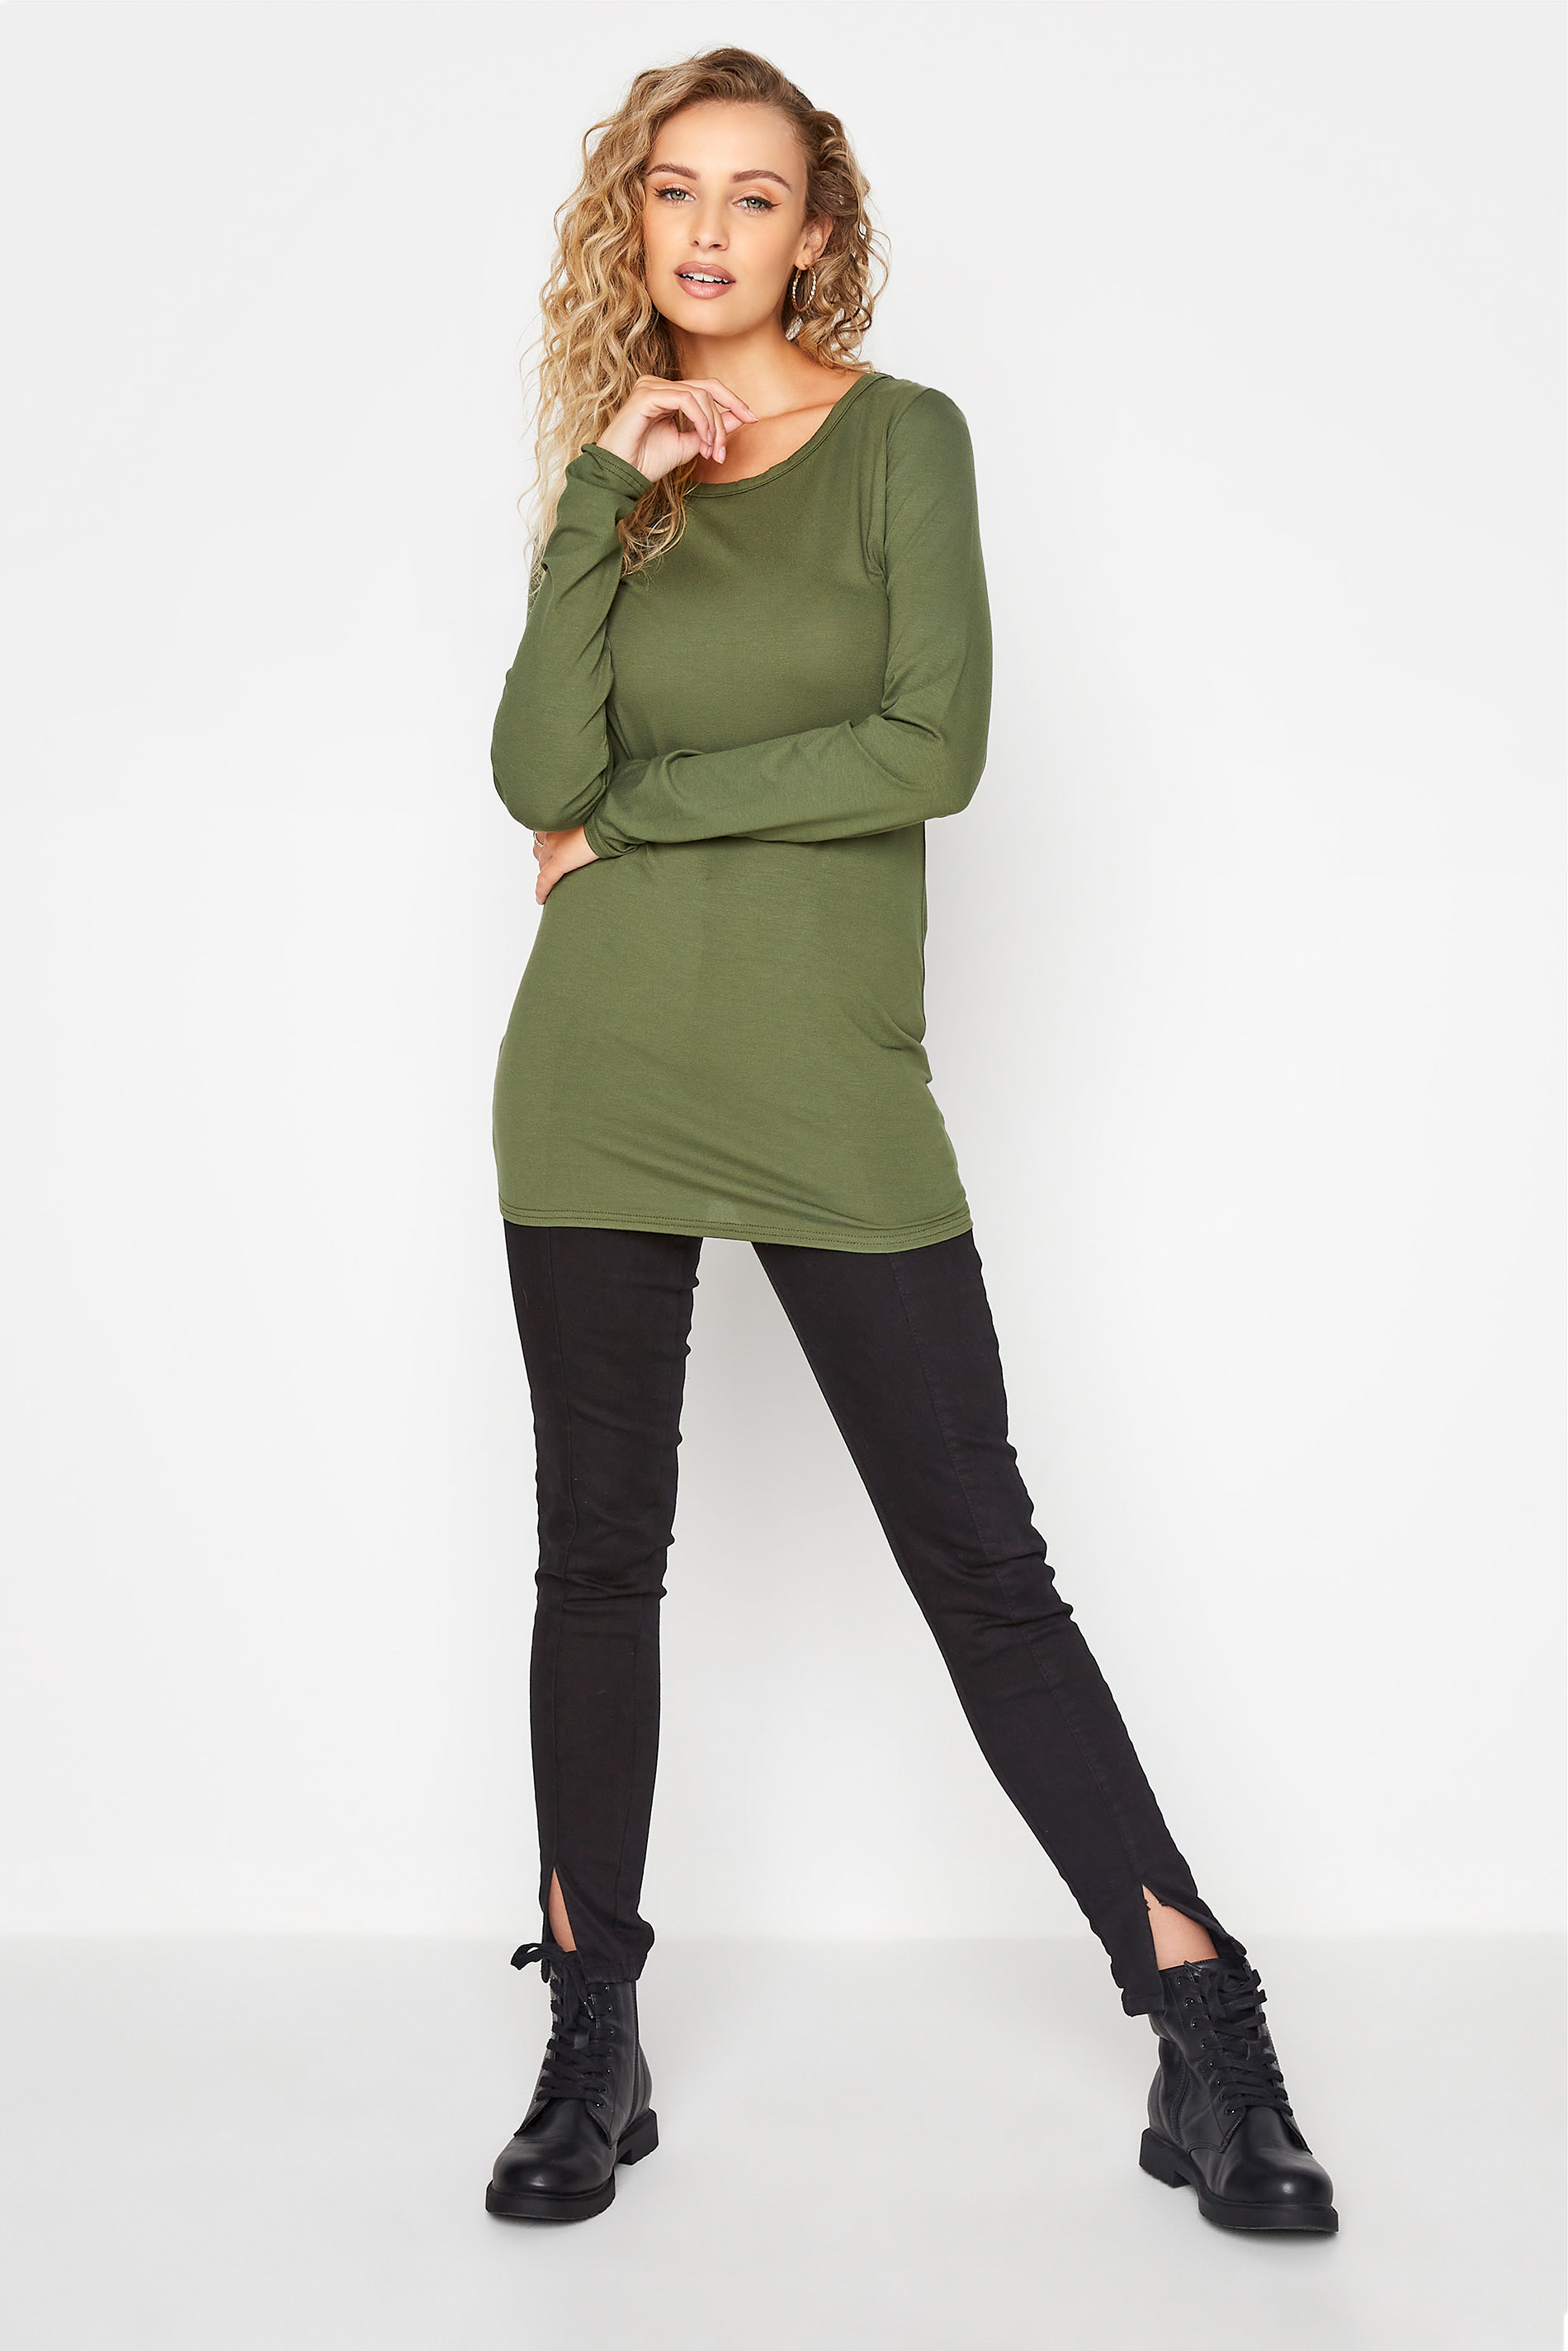  Tall Women's Khaki Green Long Sleeve T-Shirt | Long Tall Sally 2